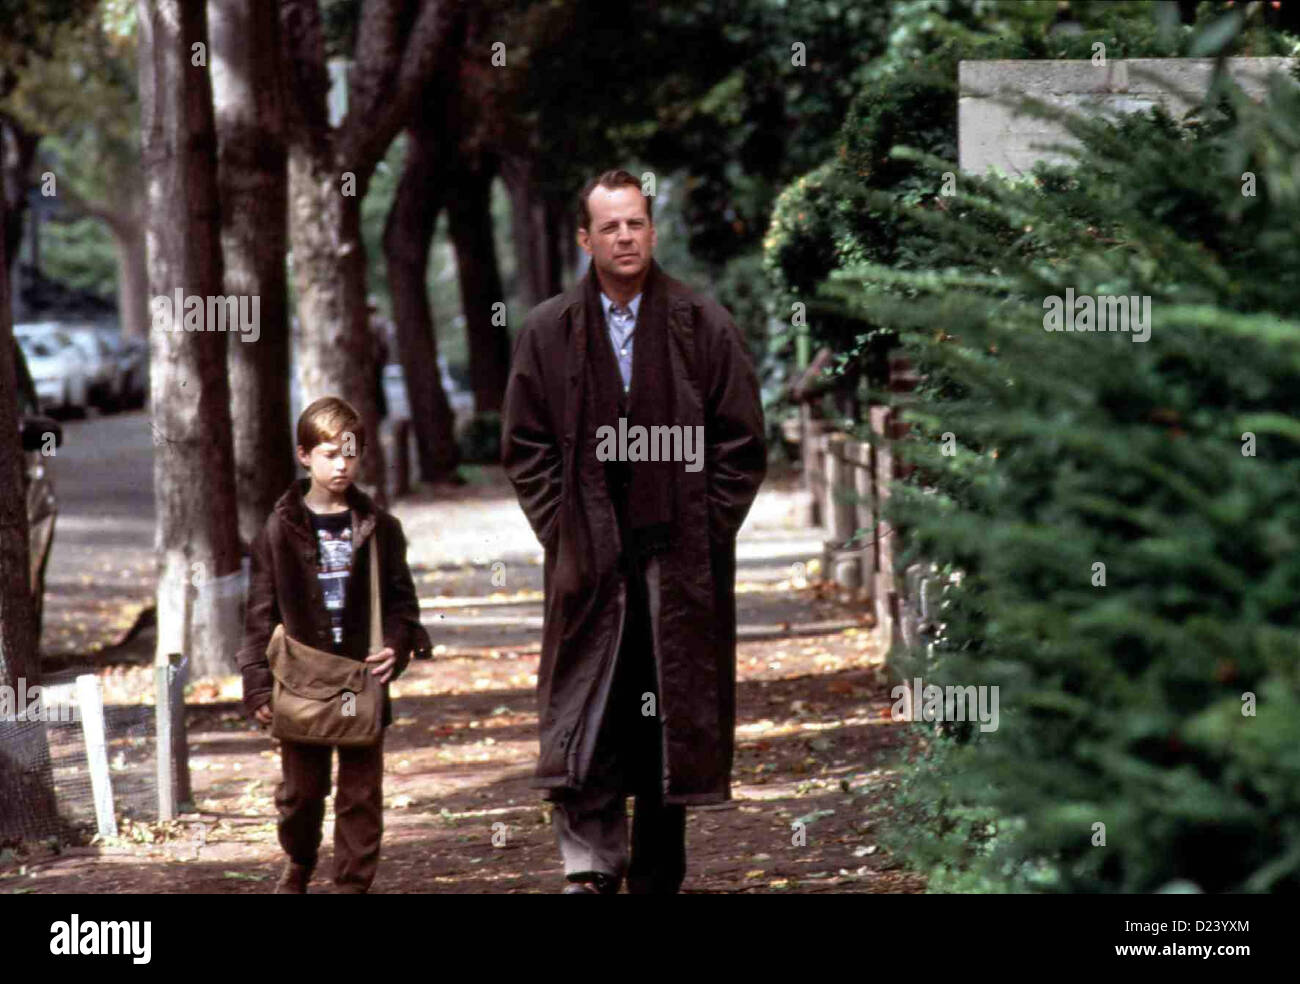 Den sechsten Sinn sechsten Sinn, Haley Joel Osment, Bruce Willis *** lokalen Caption *** 1999 Hollywood Bilder/Constantin Stockfoto